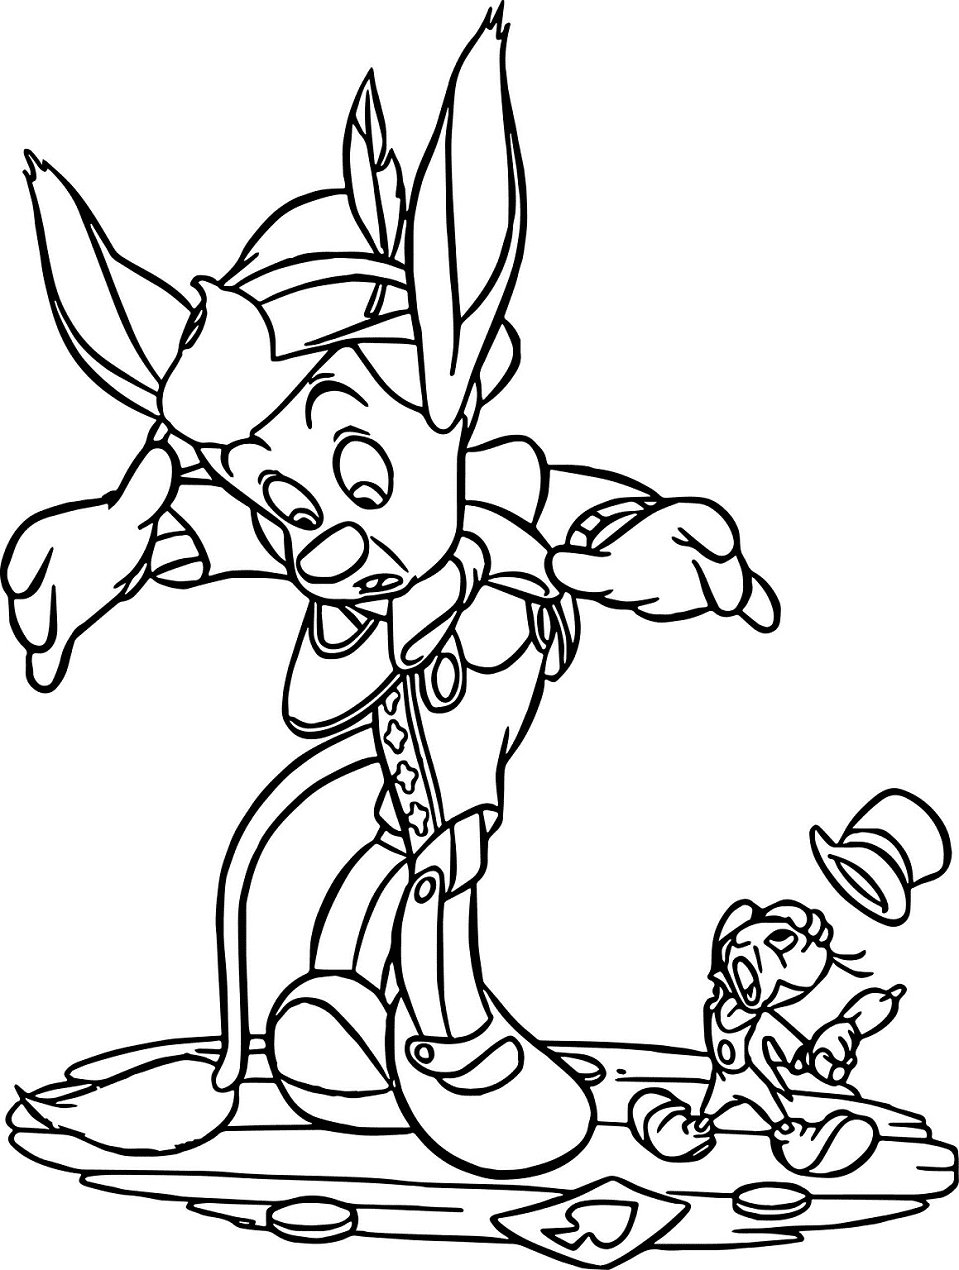 Pinocho y Jiminy Cricket para colorear